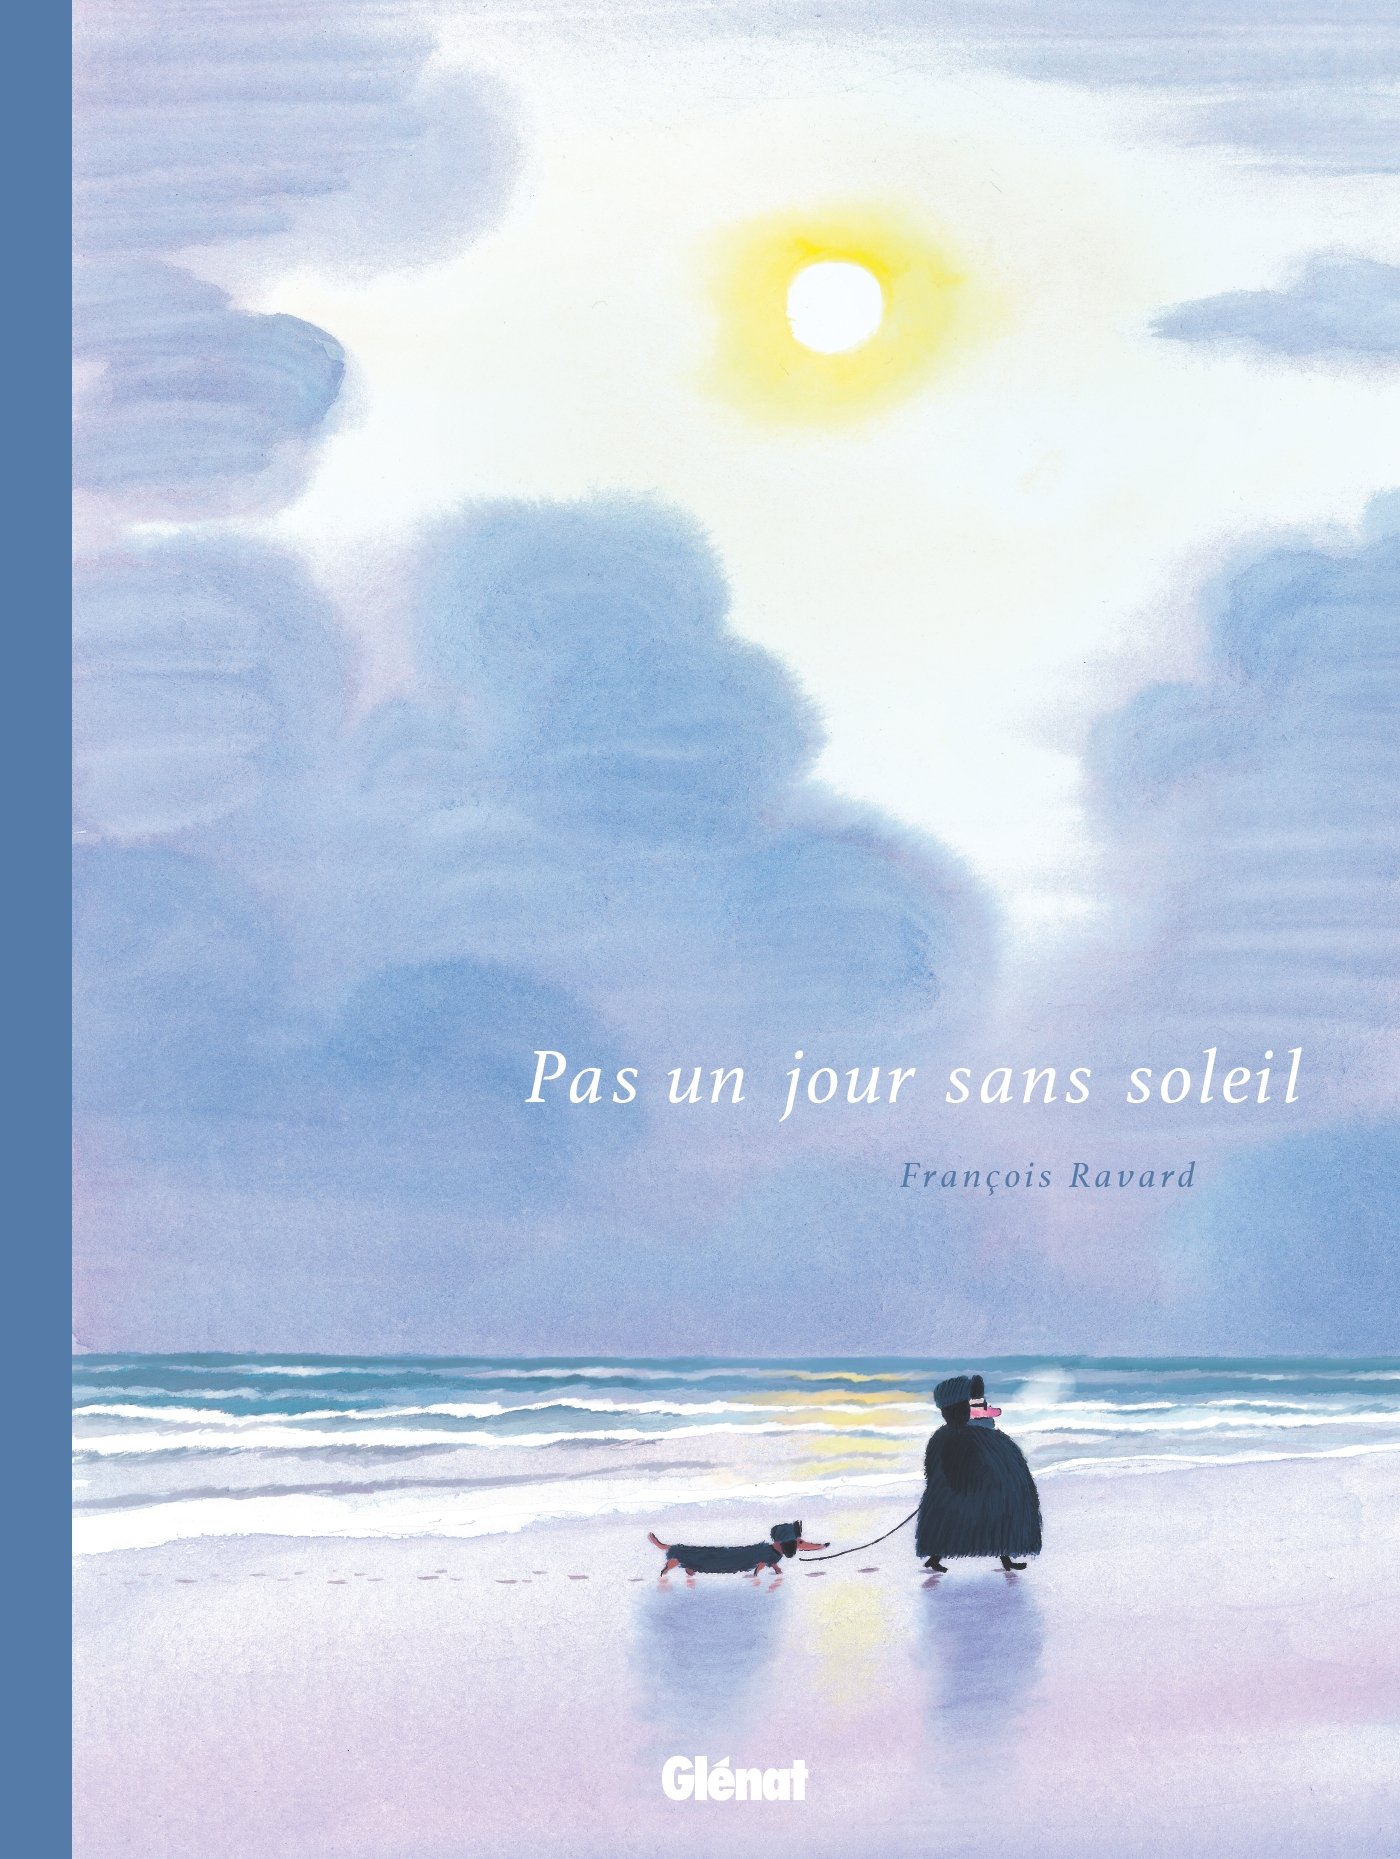 Couverture du recueil de dessins "Pas un jour sans soleil" (éditions Glénat 2018).